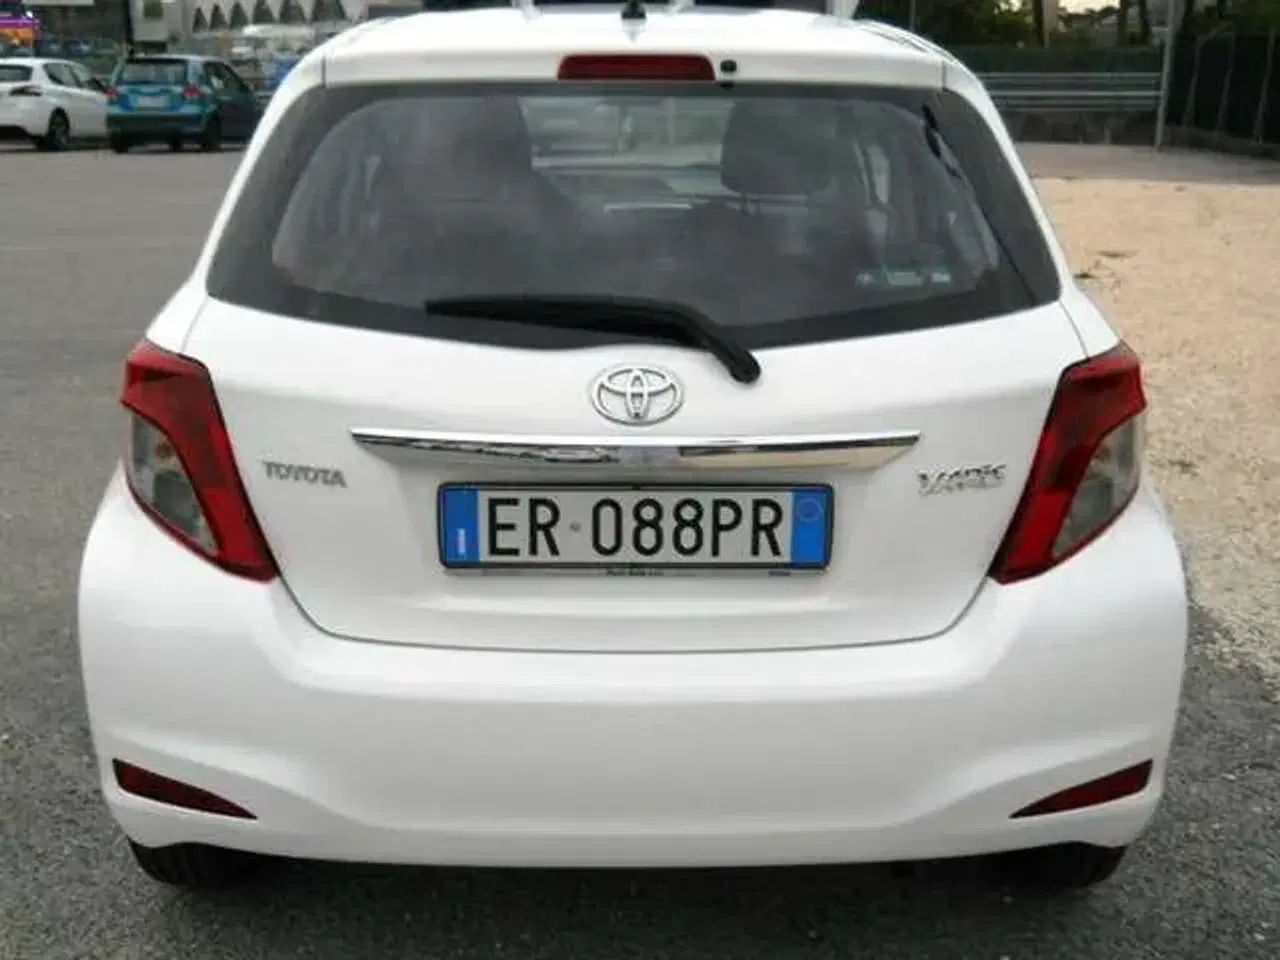 Billede 2 - Toyota Yaris fra 2013 sælges som reservedele.